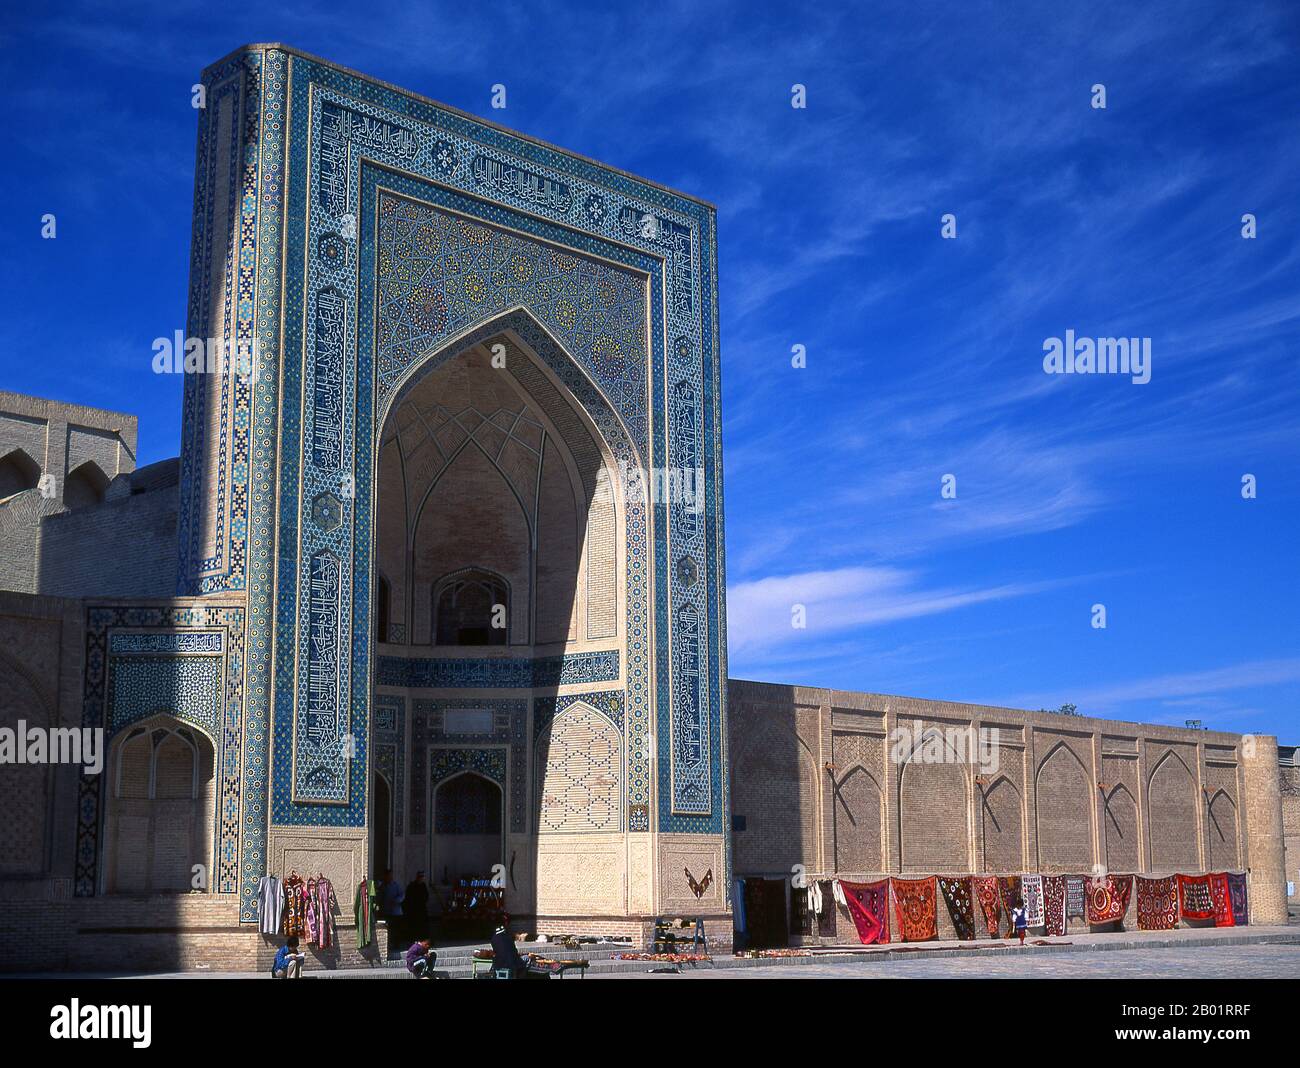 Usbekistan: Iwan oder Portikus in der Moschee und dem Minarett von Kalyan oder Kalon, Teil des Po-i-Kalyan-Komplexes, Buchara. Die Kalyan-Moschee ist Bucharas Gemeindemoschee oder Freitagsmoschee. Sie wurde im 16. Jahrhundert an der Stelle einer älteren Moschee errichtet, die von Dschingis Khan zerstört wurde. Das kalyanische Minarett oder Minâra-i Kalân (Persisch/tadschikisch für das „große Minarett“) ist Teil des Po-i-Kalyan-Moschee-Komplexes und wurde von Bako entworfen und 1127 vom arachanidischen Herrscher Arslan Khan erbaut. Das Minarett ist in Form eines Rundsäulenturms aus Ziegelstein gefertigt, der sich nach oben verengt. Stockfoto